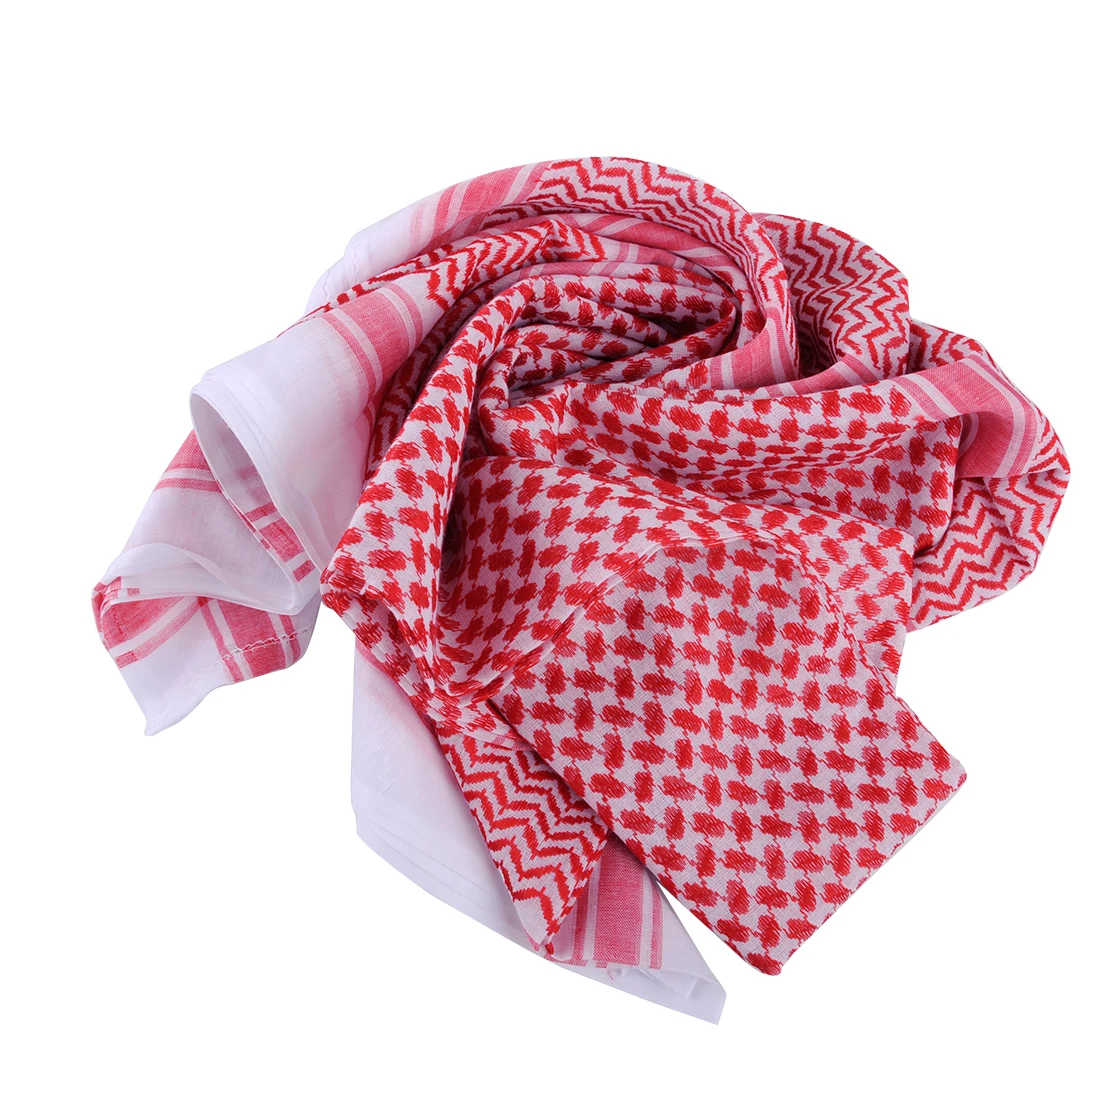 Мусульманская мужская шапка тюрбан большой молитвенный Аравийский мужской шарф шапки Шаль ислам Keffiyeh головные уборы шарфы - Цвет: Red White